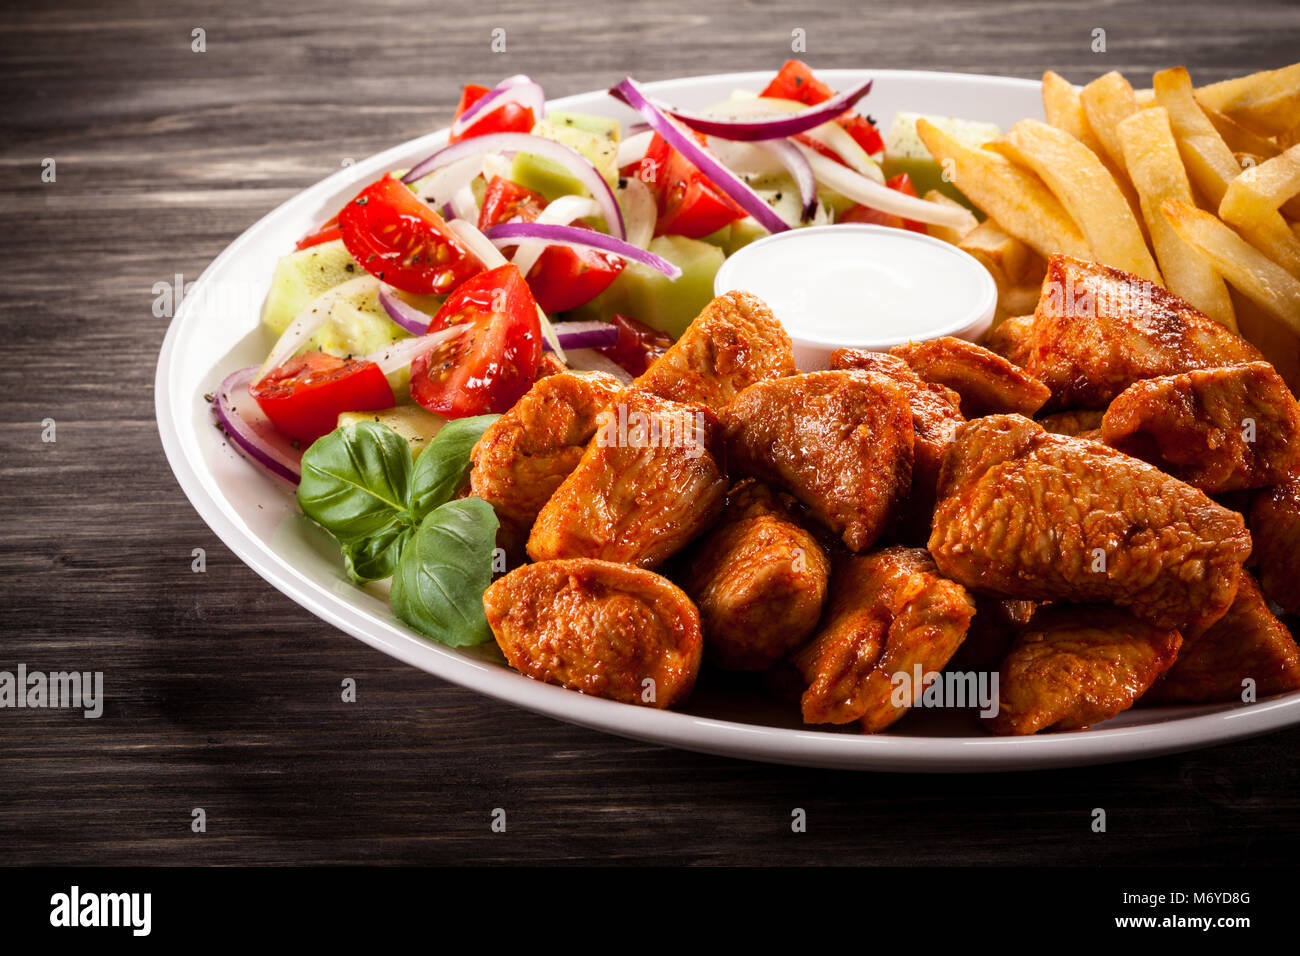 Kebab - Fleisch vom Grill mit Pommes Frites und vegetab Stockfotografie ...